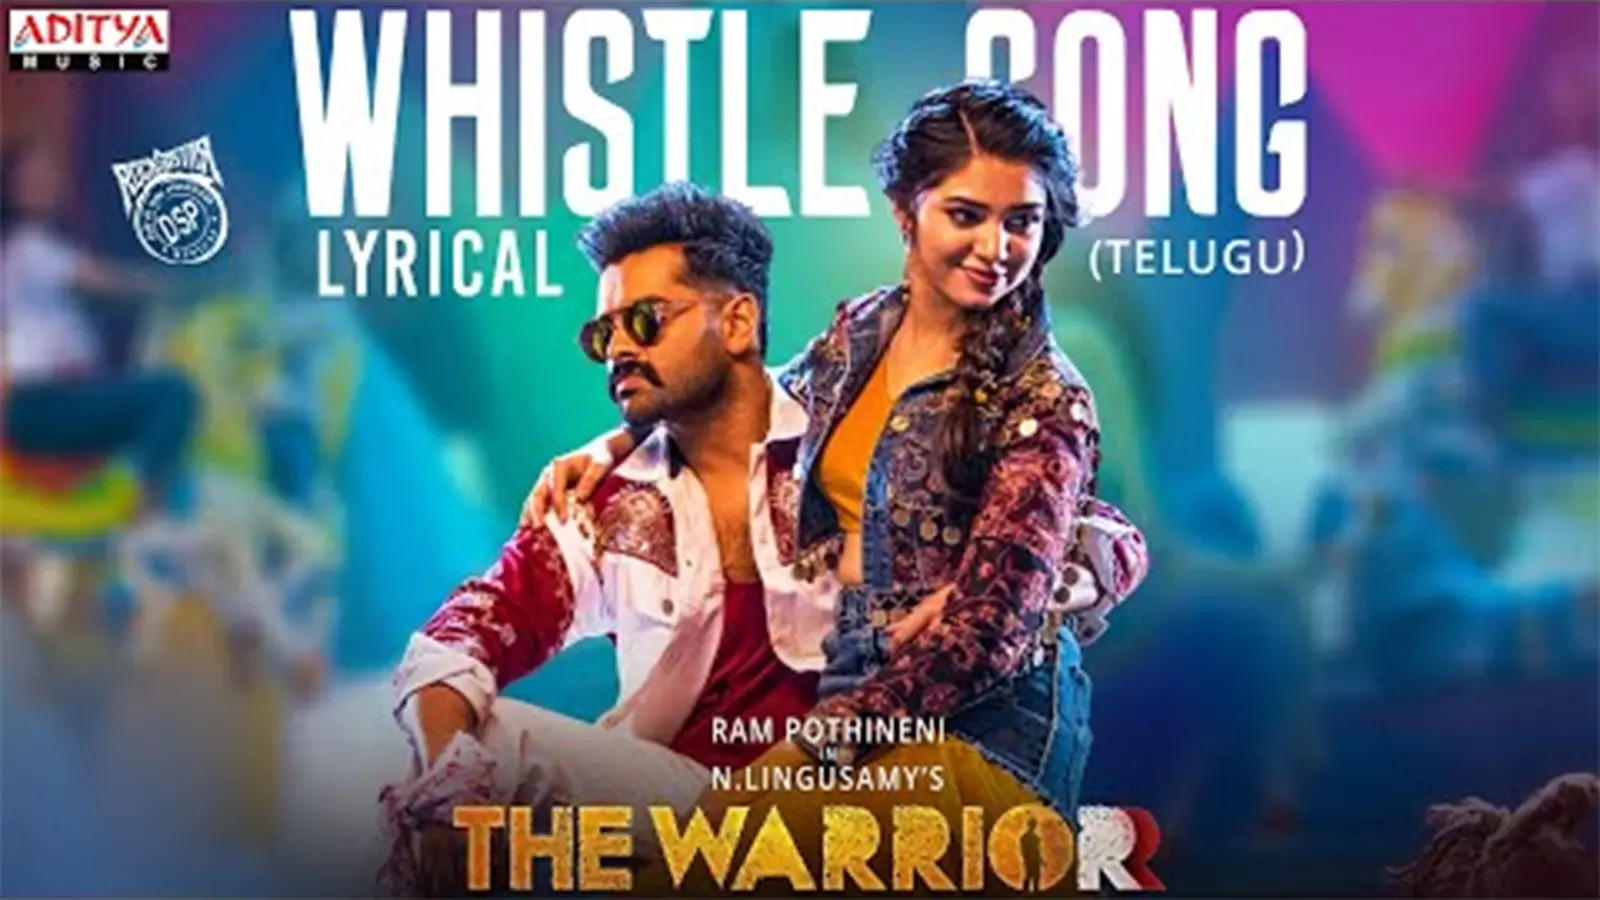 Telugu Song: Latest Telugu Lyrical Video Song 'Whistle' from 'The Warriorr'  Ft. Ram Pothineni and Krithi Shetty | Telugu Video Songs - Times of India